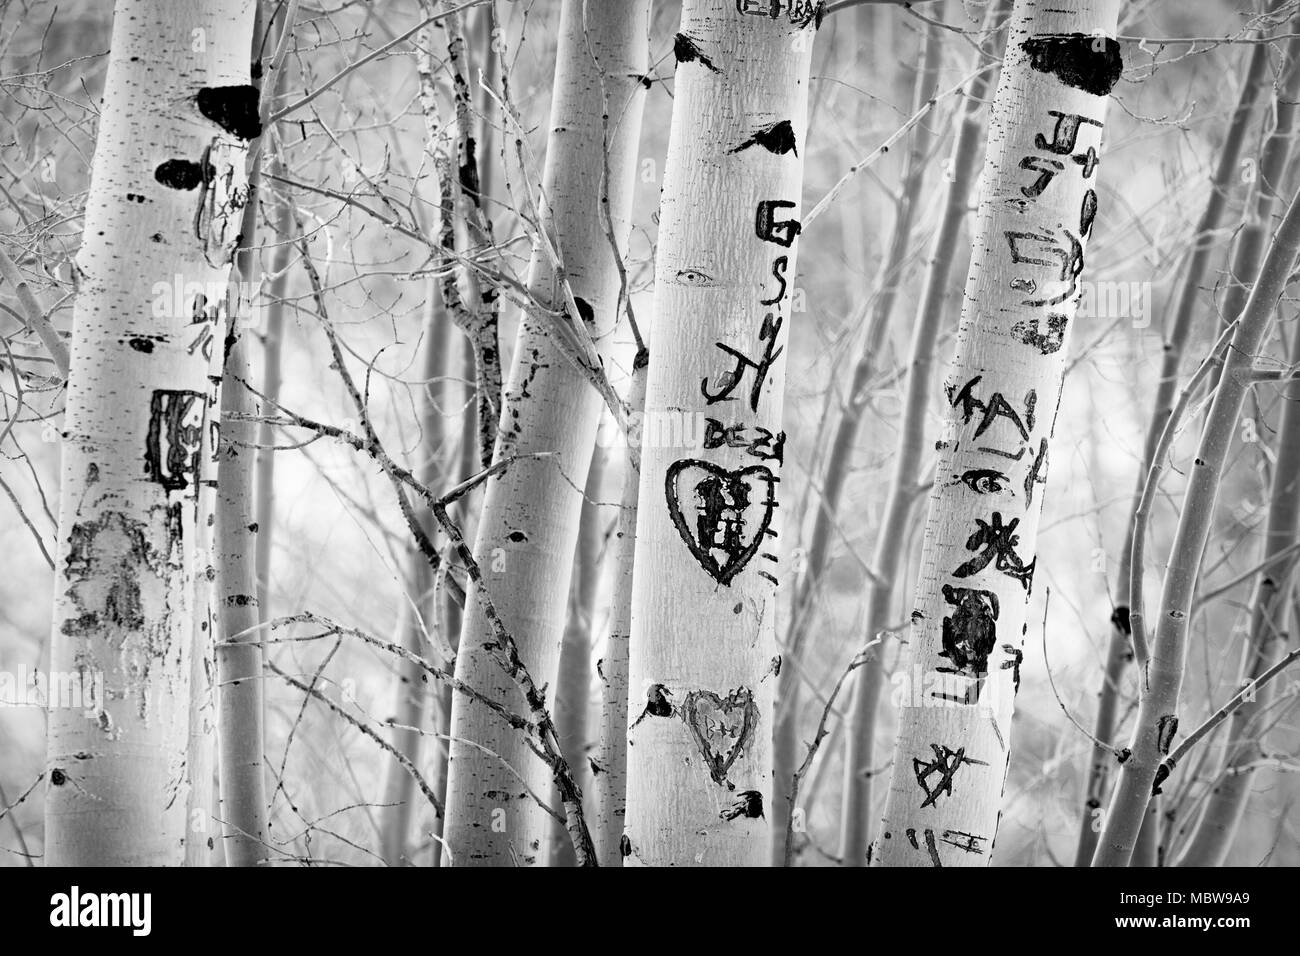 Danneggiato aspen alberi dopo amante scolpire le proprie iniziali e grafitti nella corteccia come un segno di amore eterno. Foto Stock